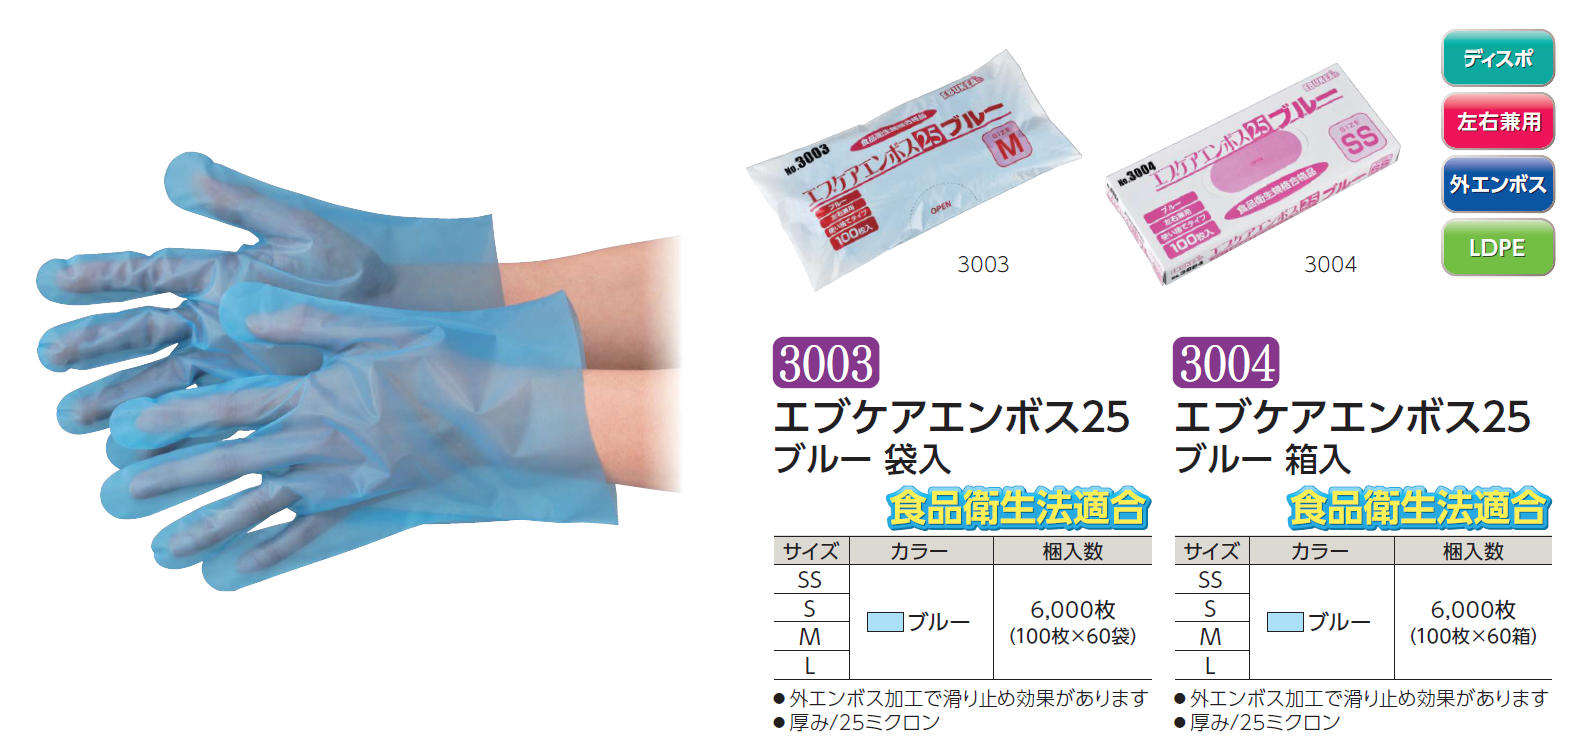 売れ筋新商品 No.3001 エブケアエンボス25 食品衛生法適合 使い捨て手袋半透明 Mサイズ 袋入 100枚入 